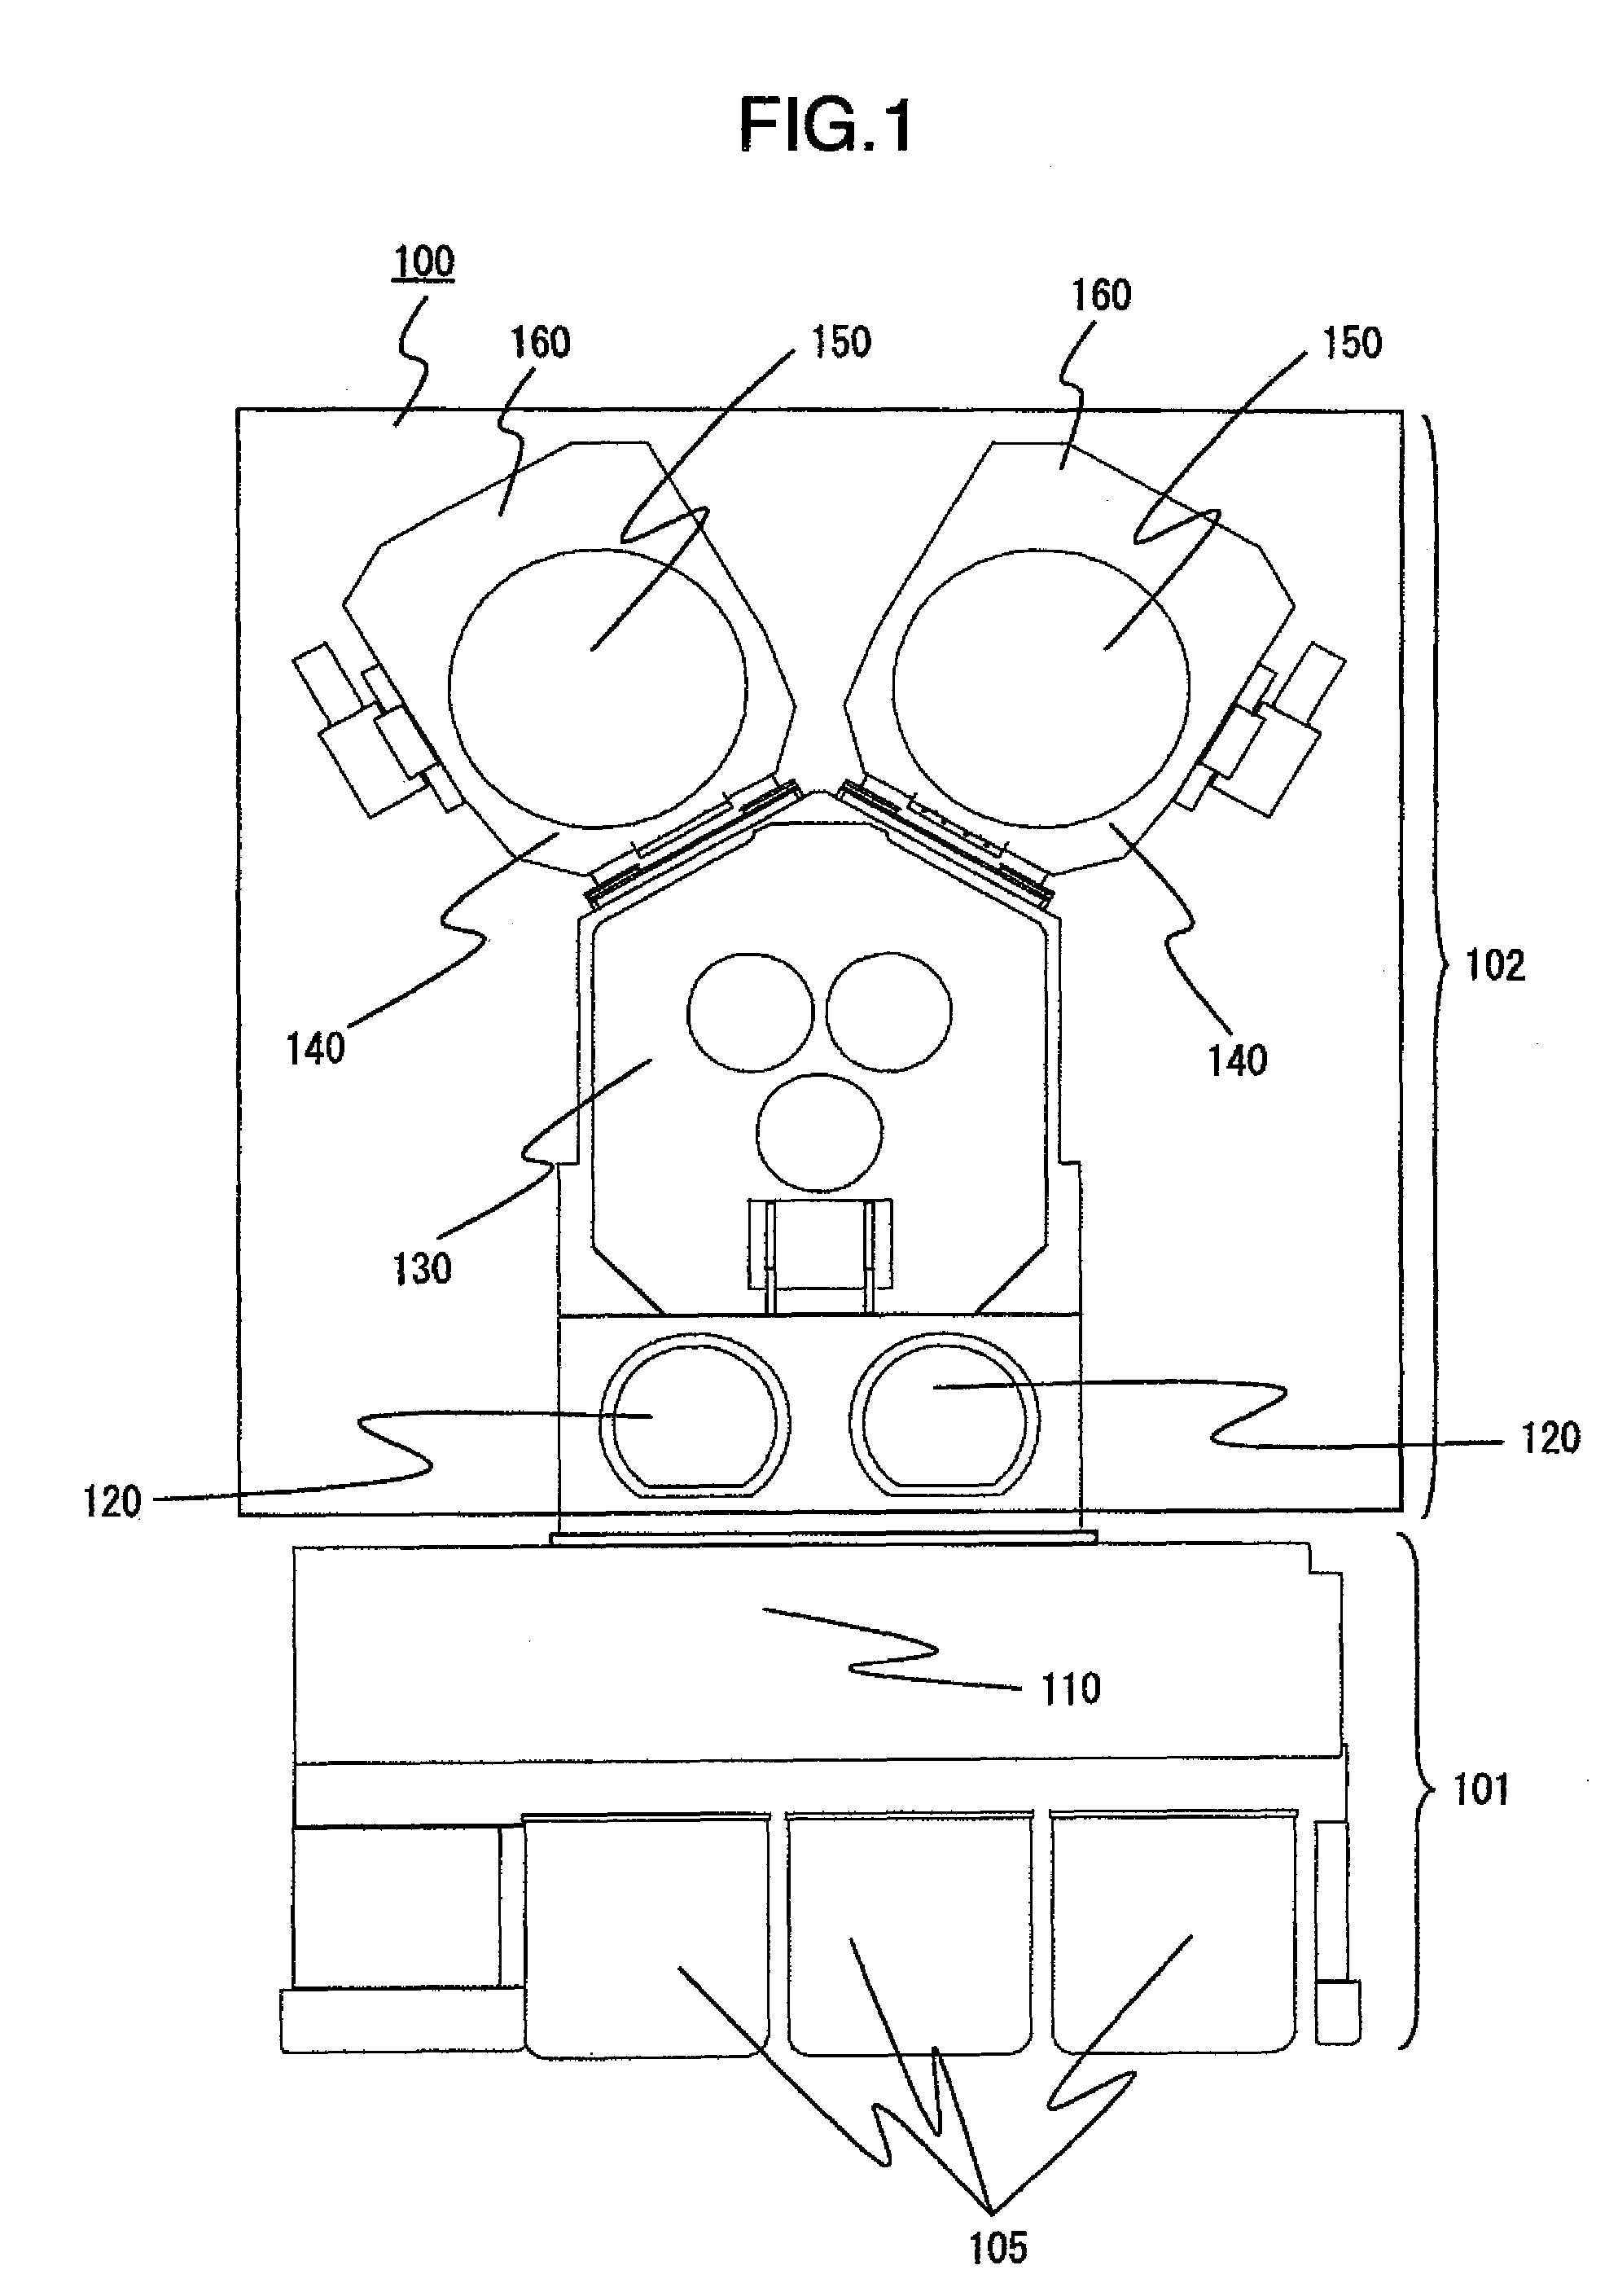 Vacuum processing apparatus